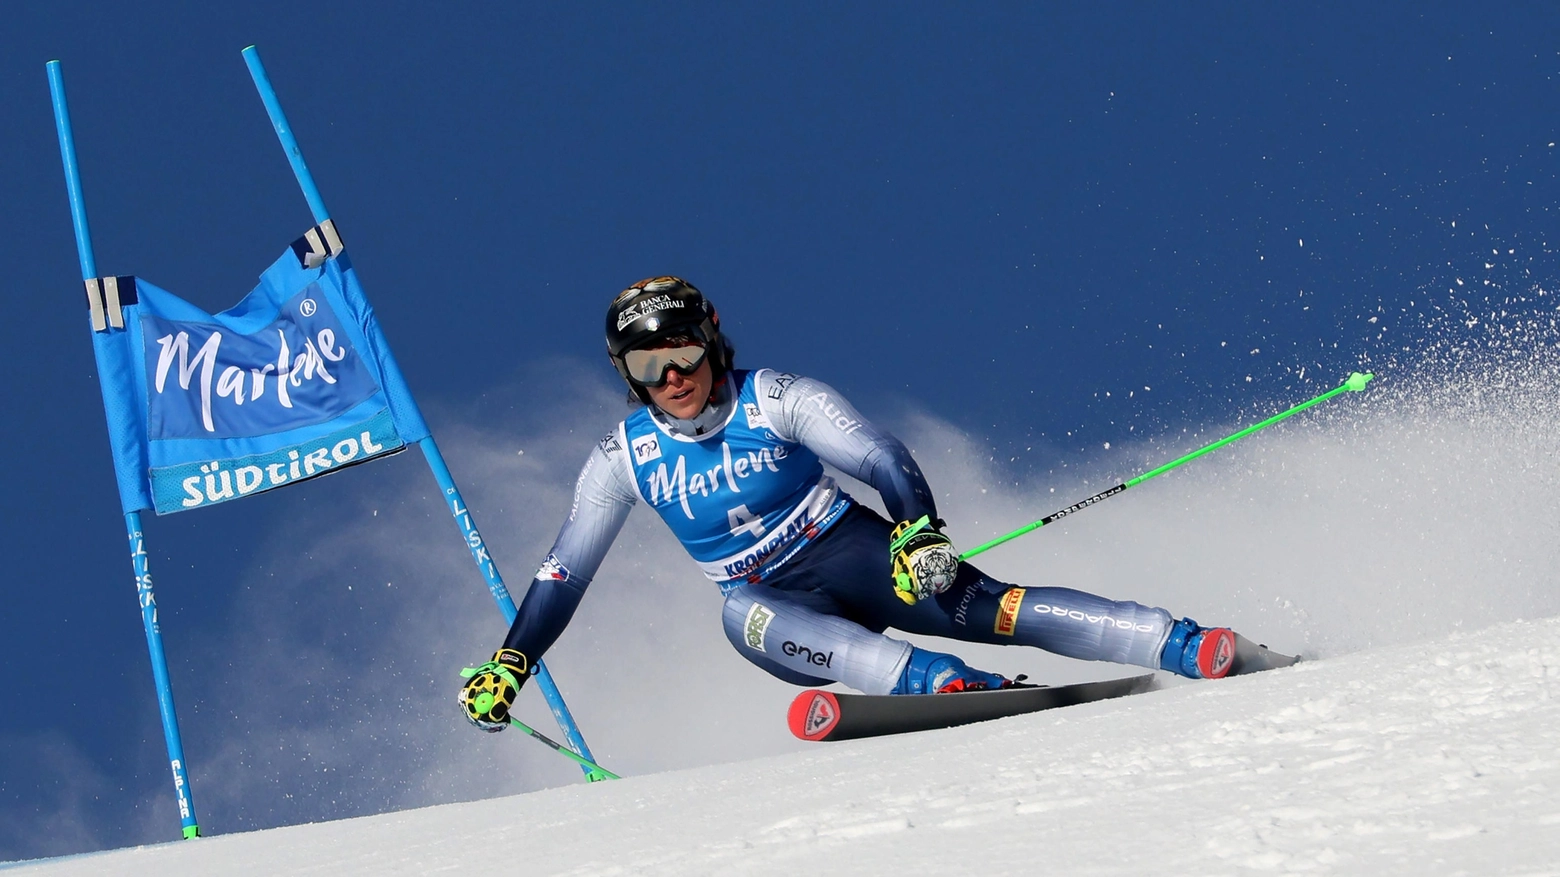 Riprende la Coppa del Mondo dopo la cancellazione di Garmisch, si va ad Andorra con uno slalom gigante: senza Goggia l’Italia punta su Brignone e Bassino